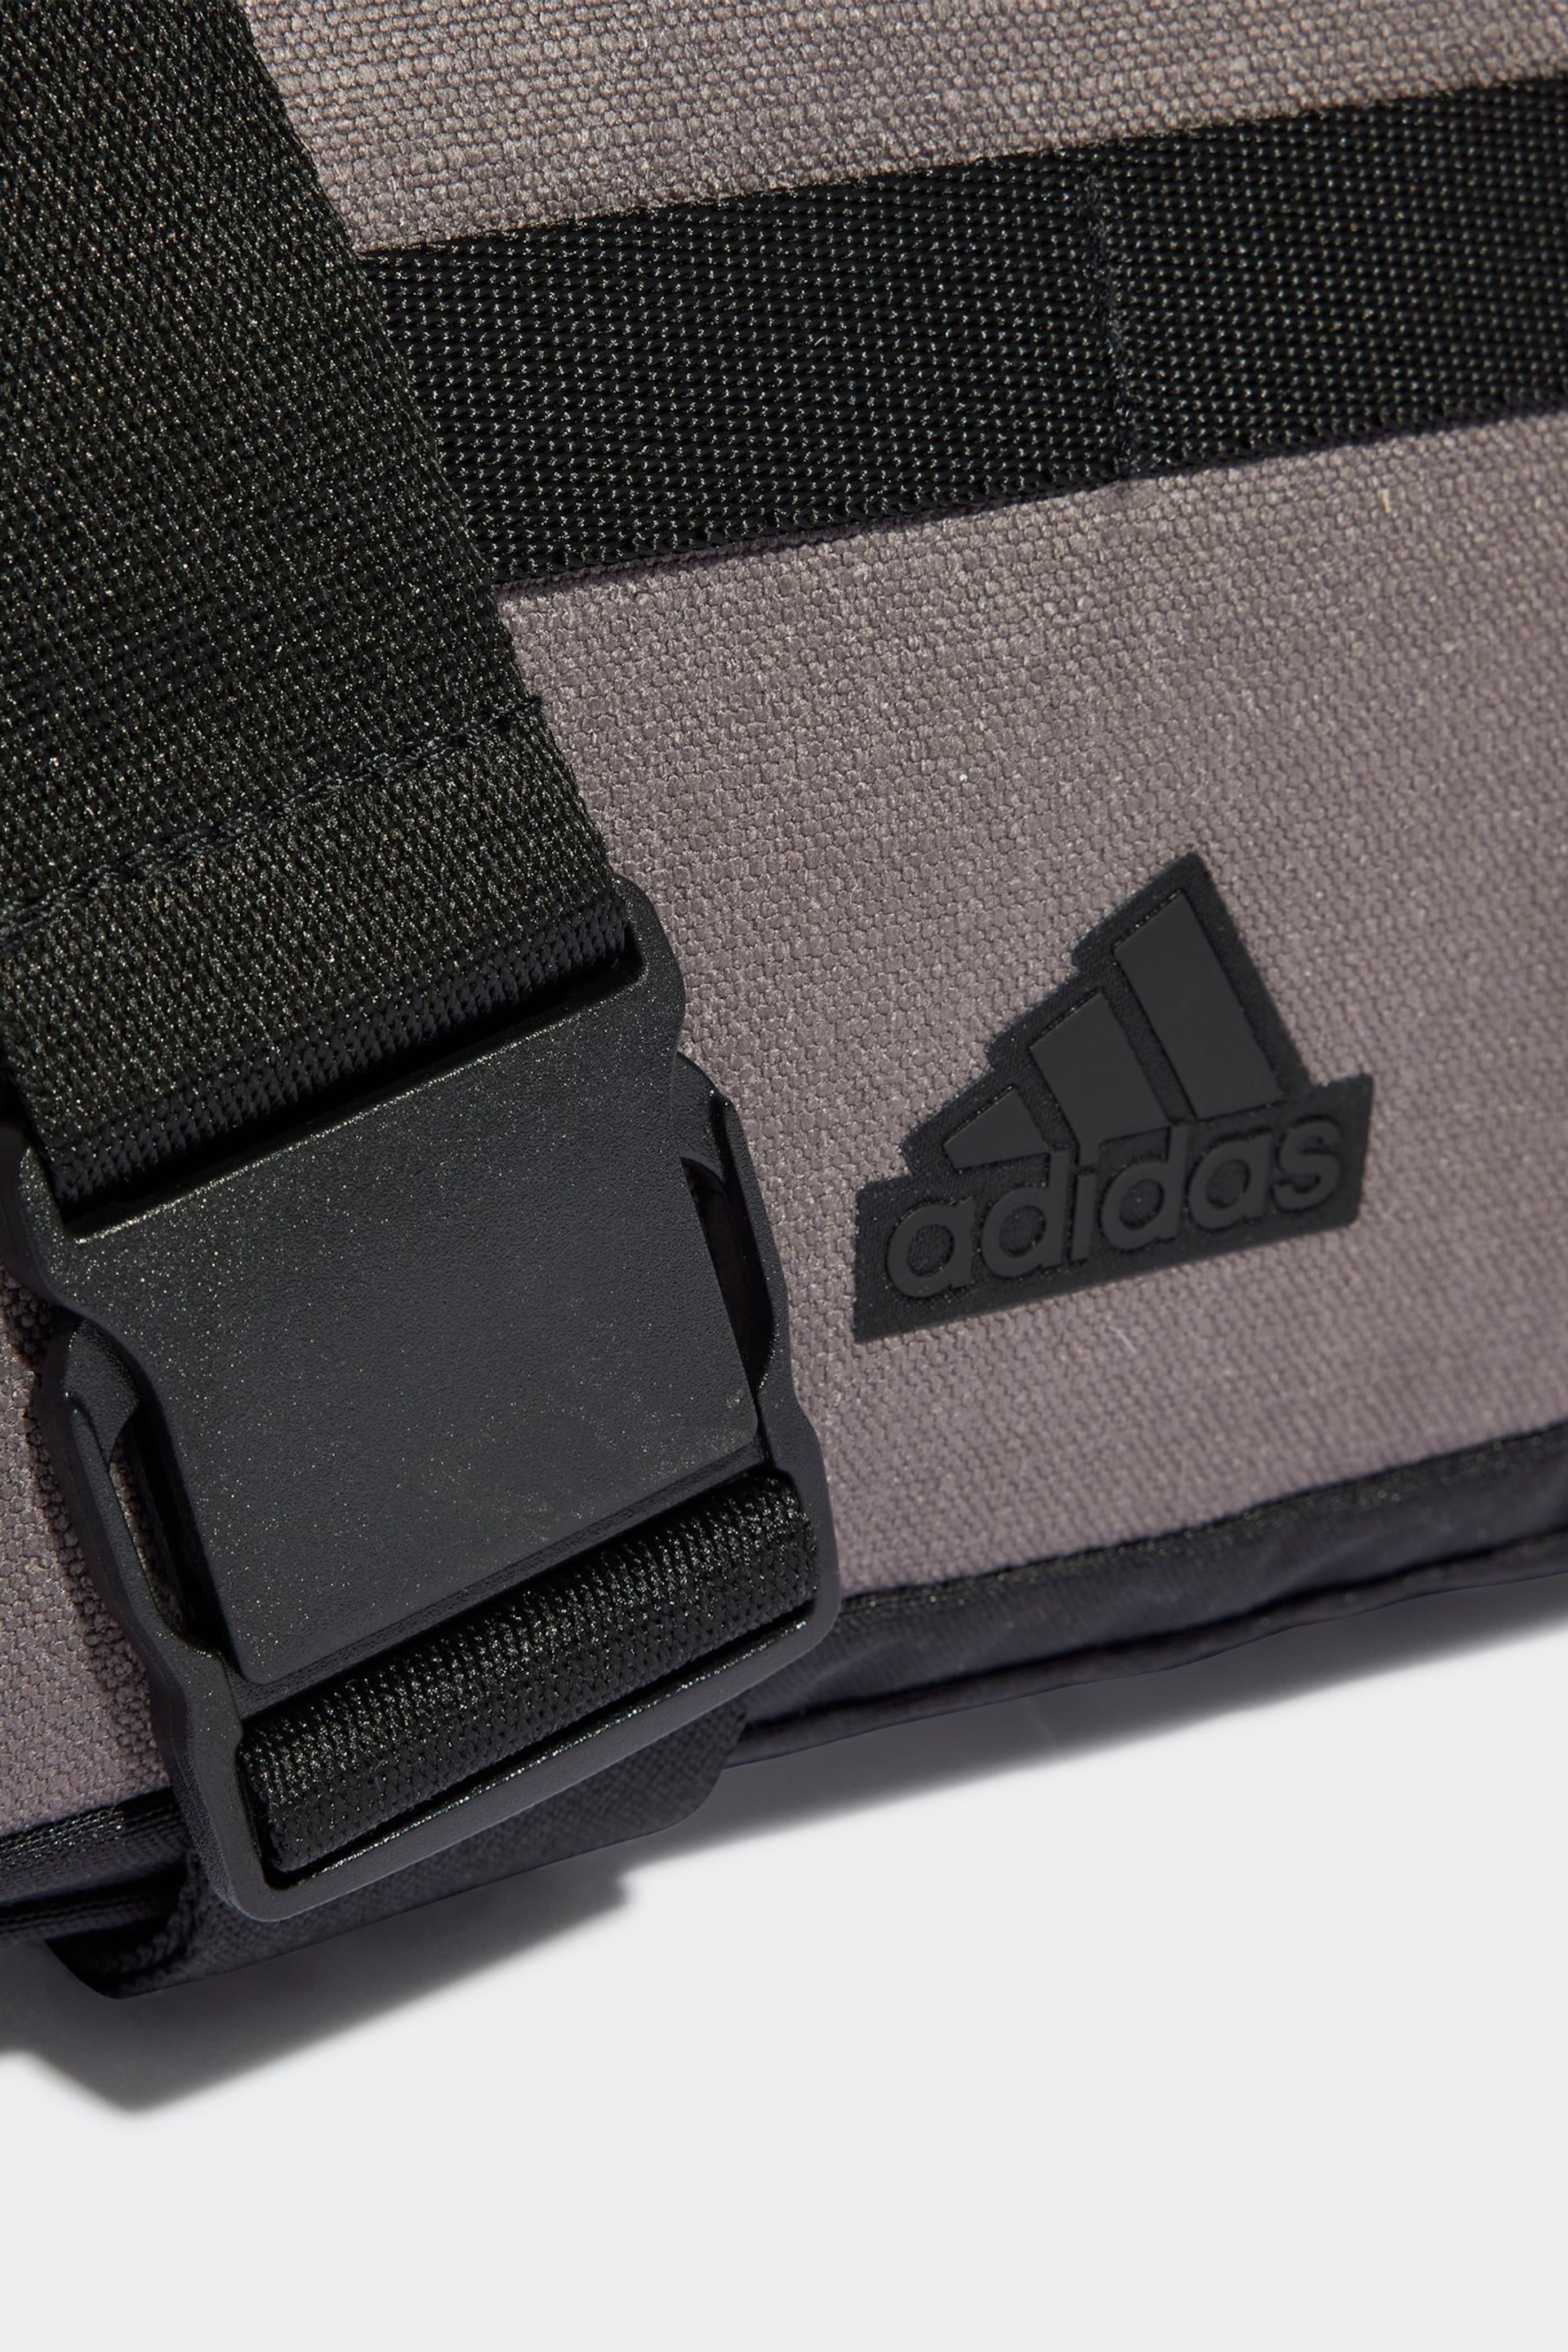 adidas Brown Light Xplorer Small Bag - Image 5 of 6